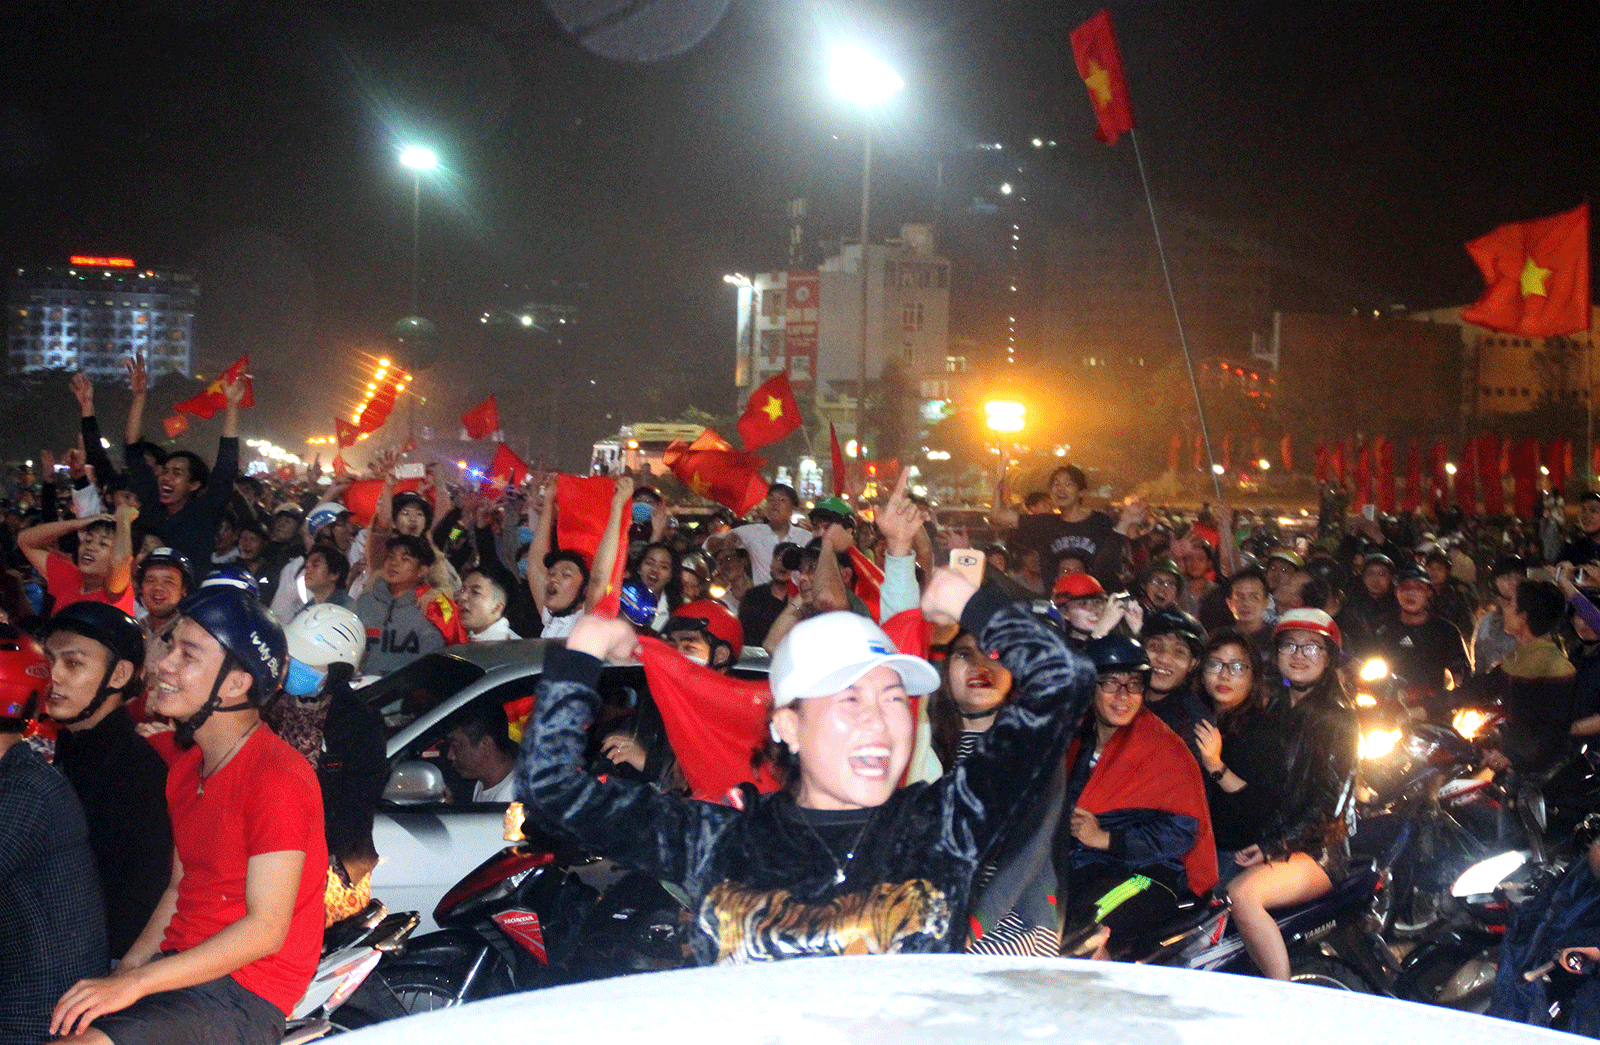 Cả nước vỡ òa trước kỳ tích của U23 Việt Nam ảnh 52